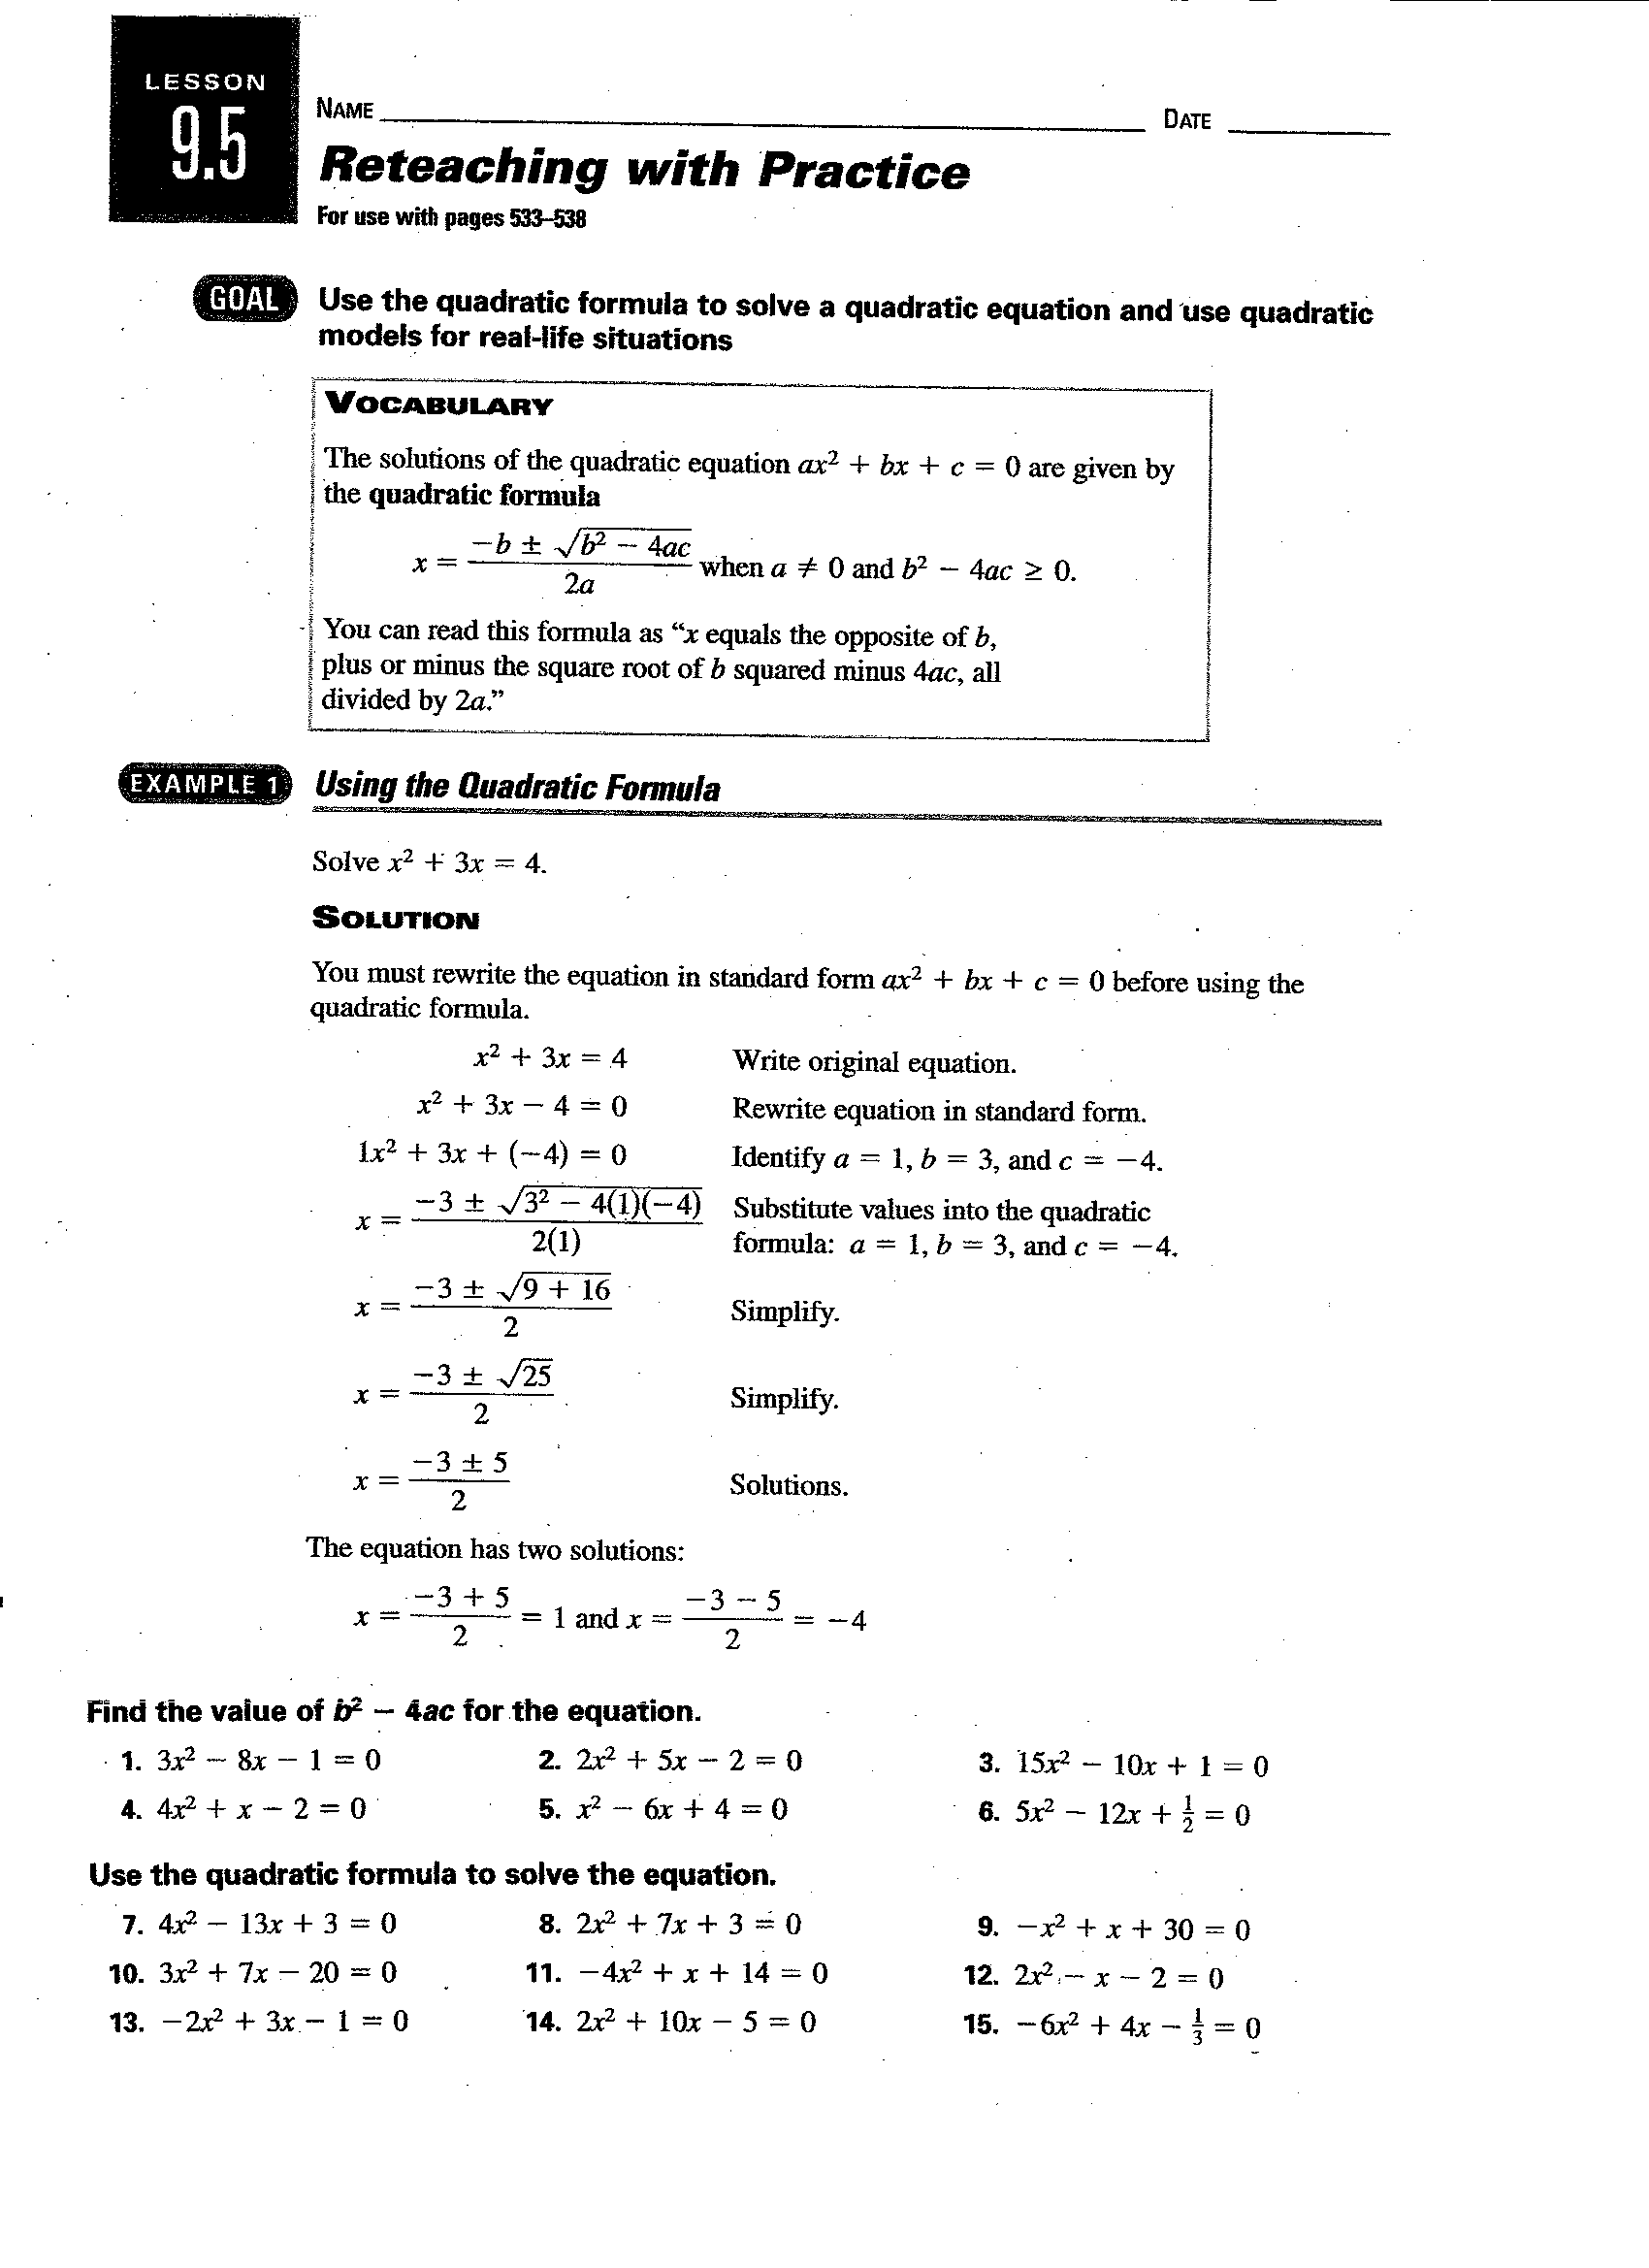 Quadratic Formula Worksheet Algebra 2 Image